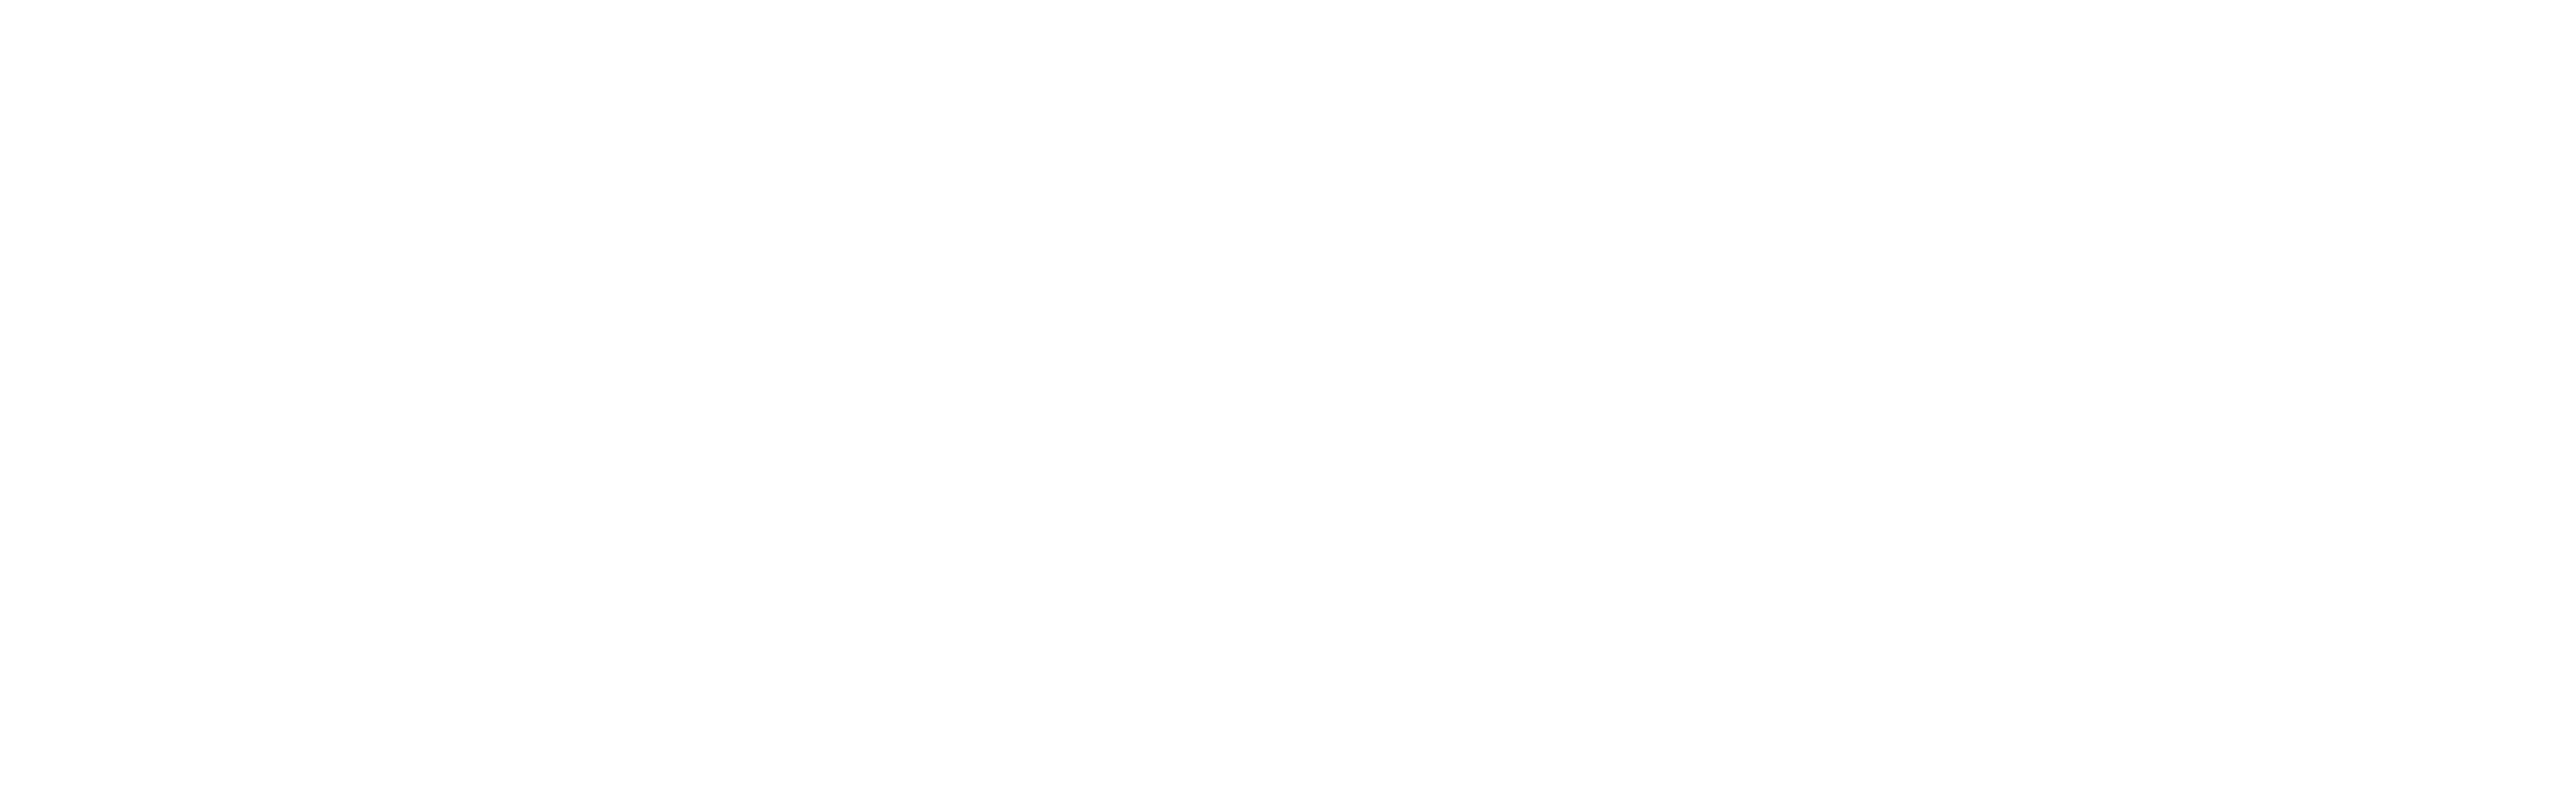 Ayuntamiento de madrid y Comunidad de Madrid